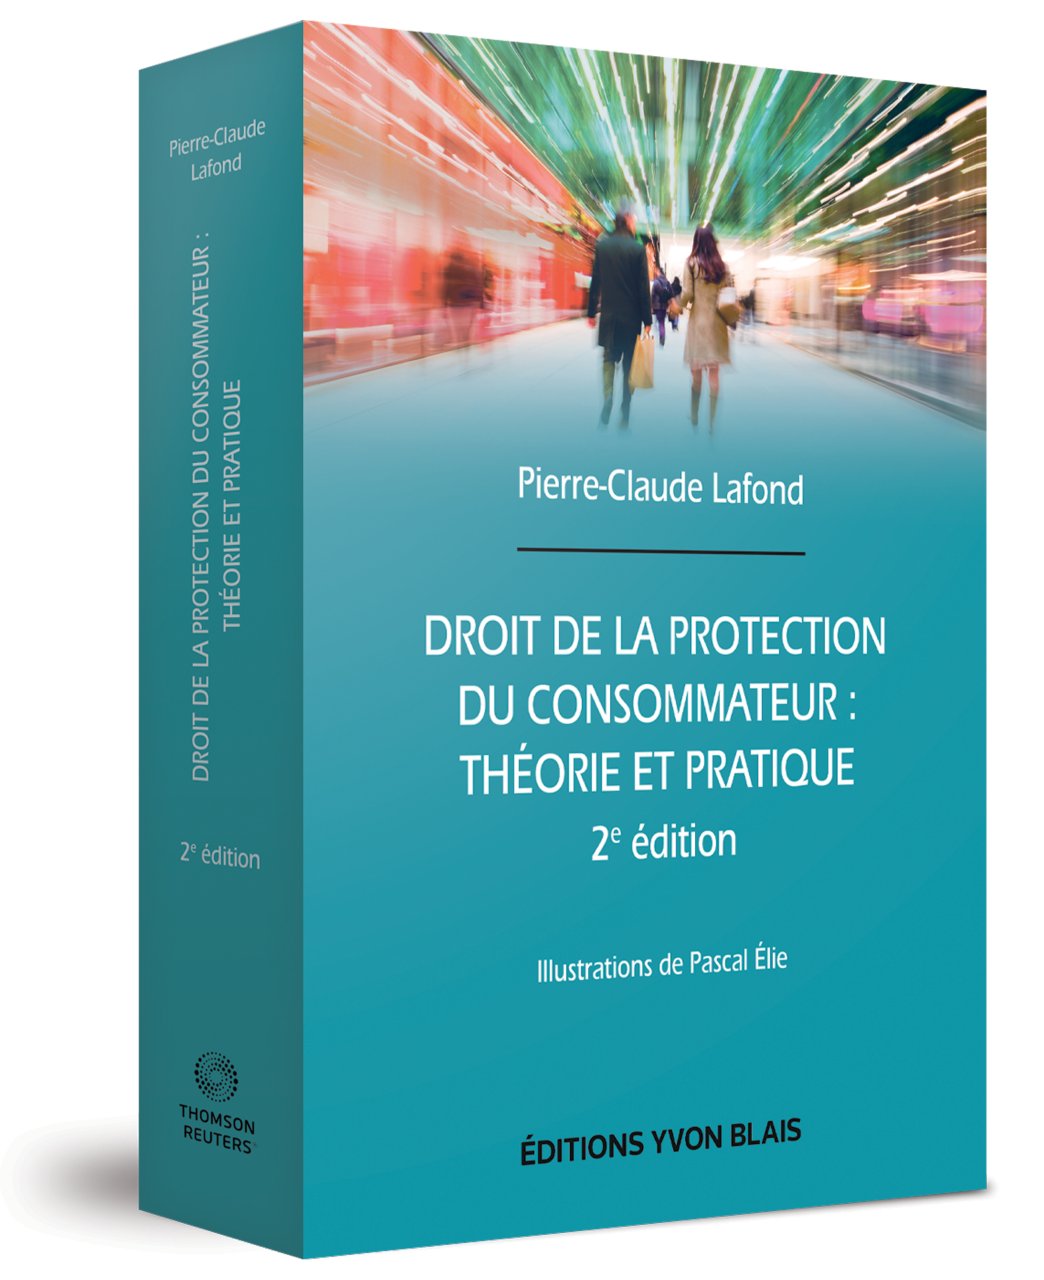 Droit de la protection du consommateur - Théorie et pratique, 2e édition